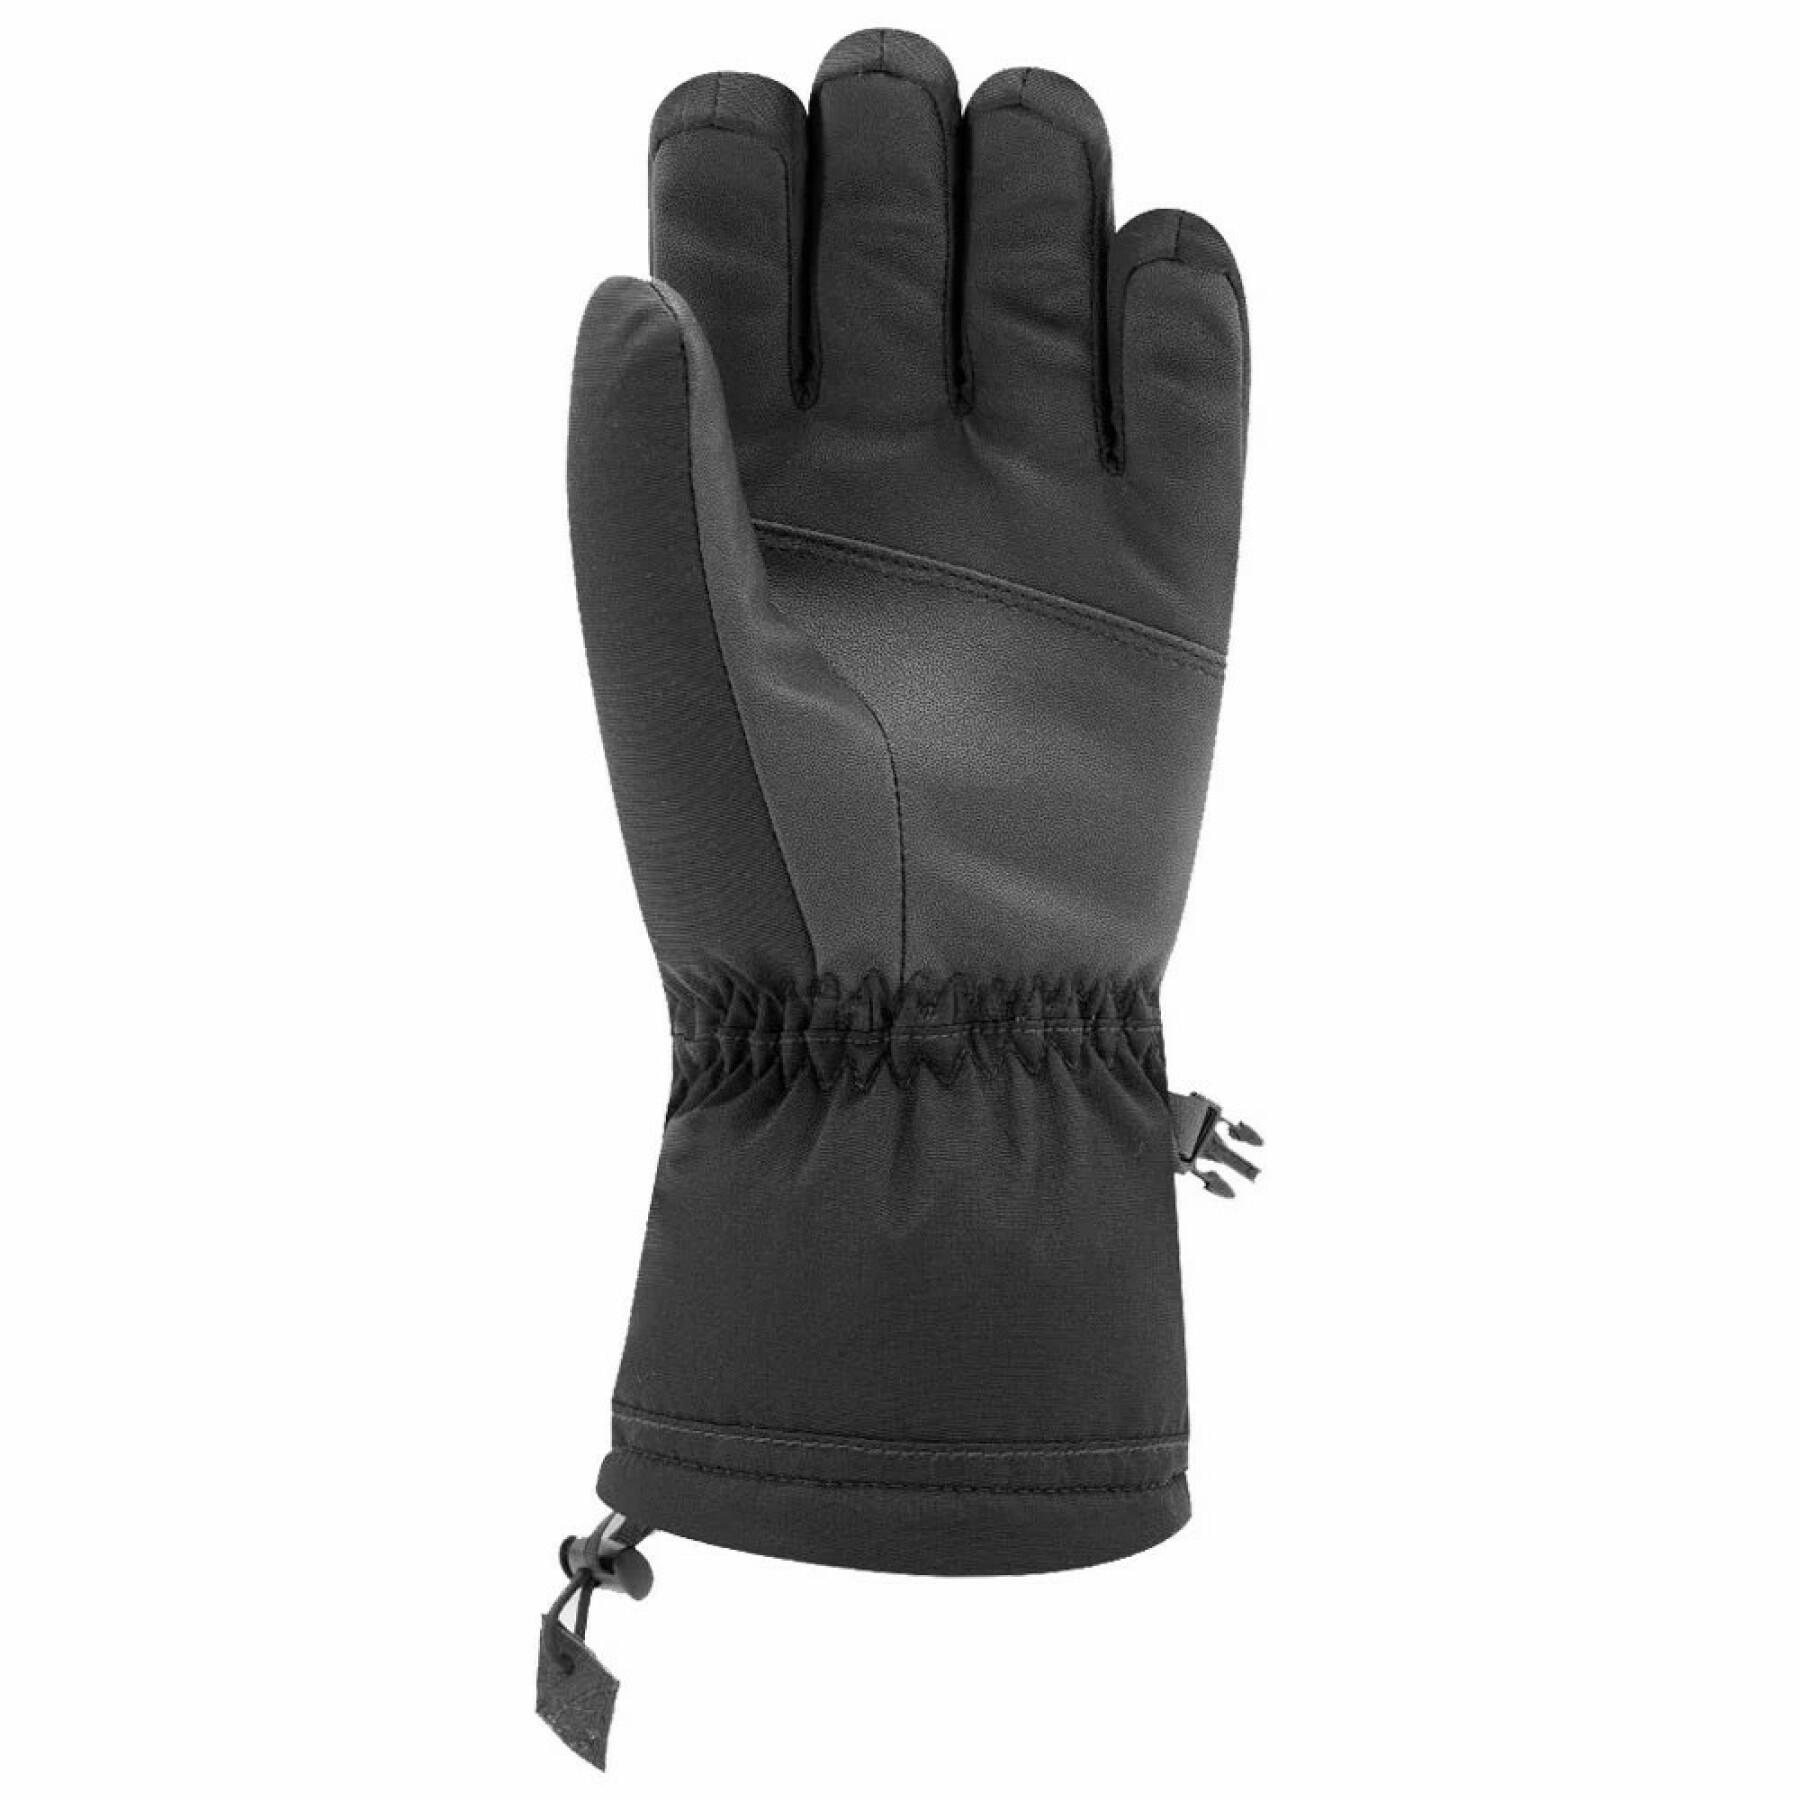 Goose down ski gloves for women Racer